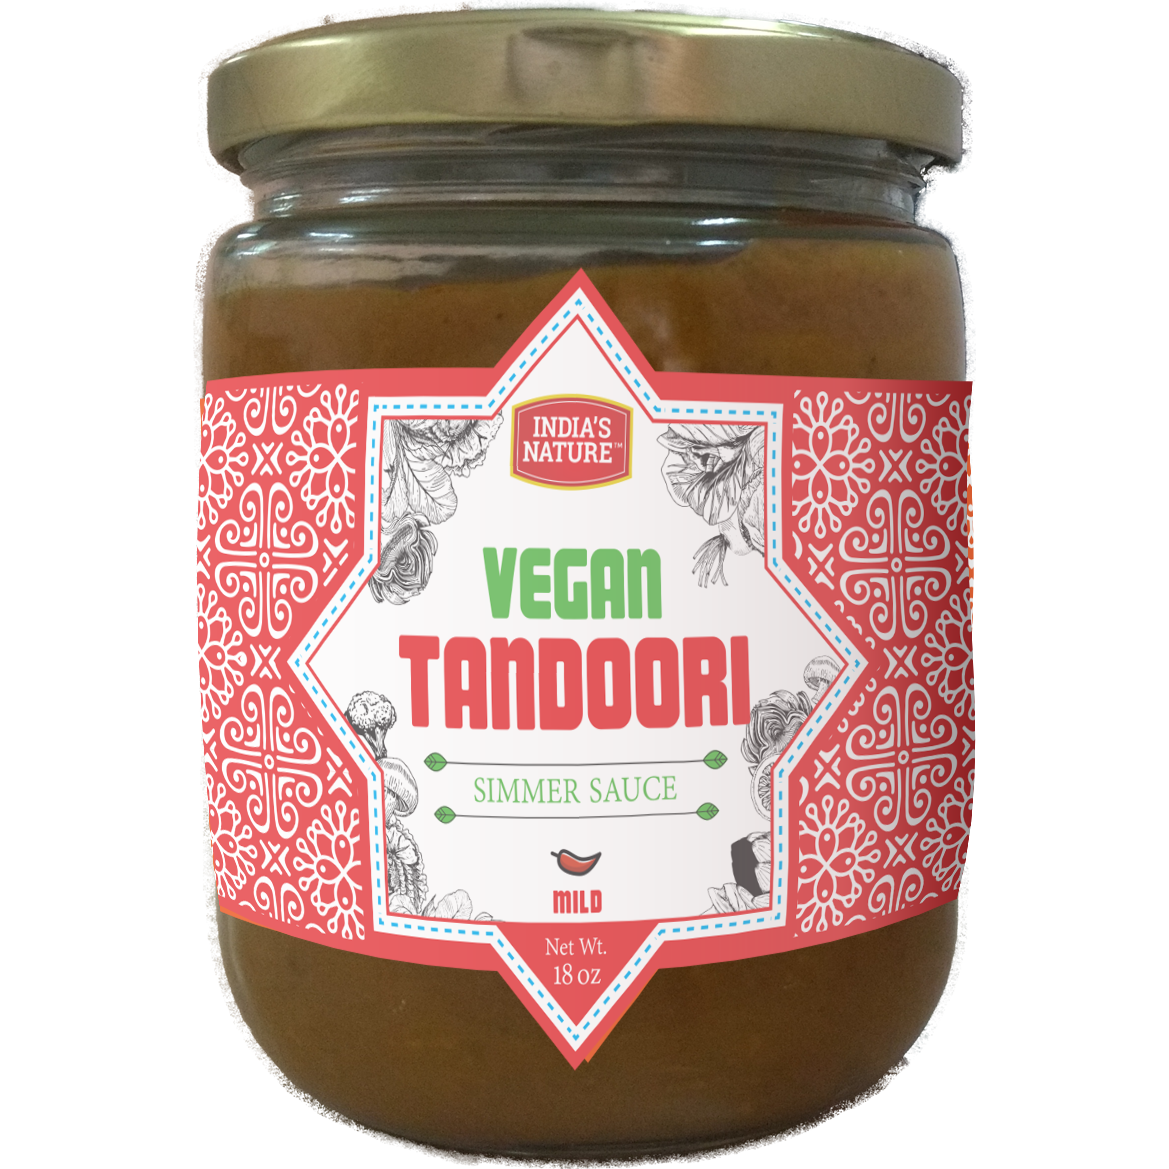 India's Nature Vegan Tandoori Simmer Sauce - 18 Oz (510 Gm)